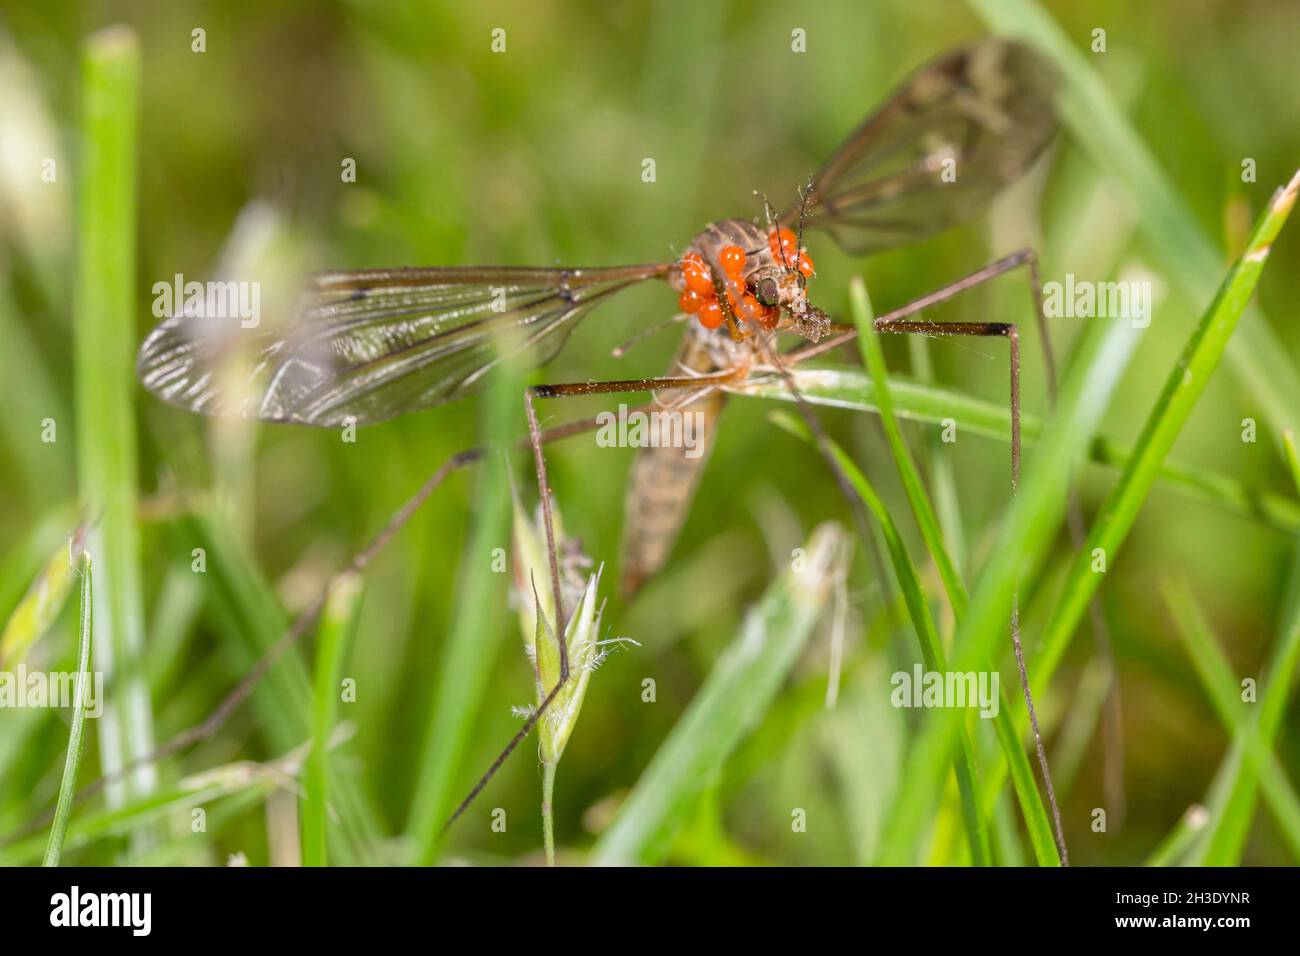 Kohl, Braune Dardy-Long-Legs (Tipula oleracea), sitzt auf Gras mit Milben bedeckt, Deutschland Stockfoto